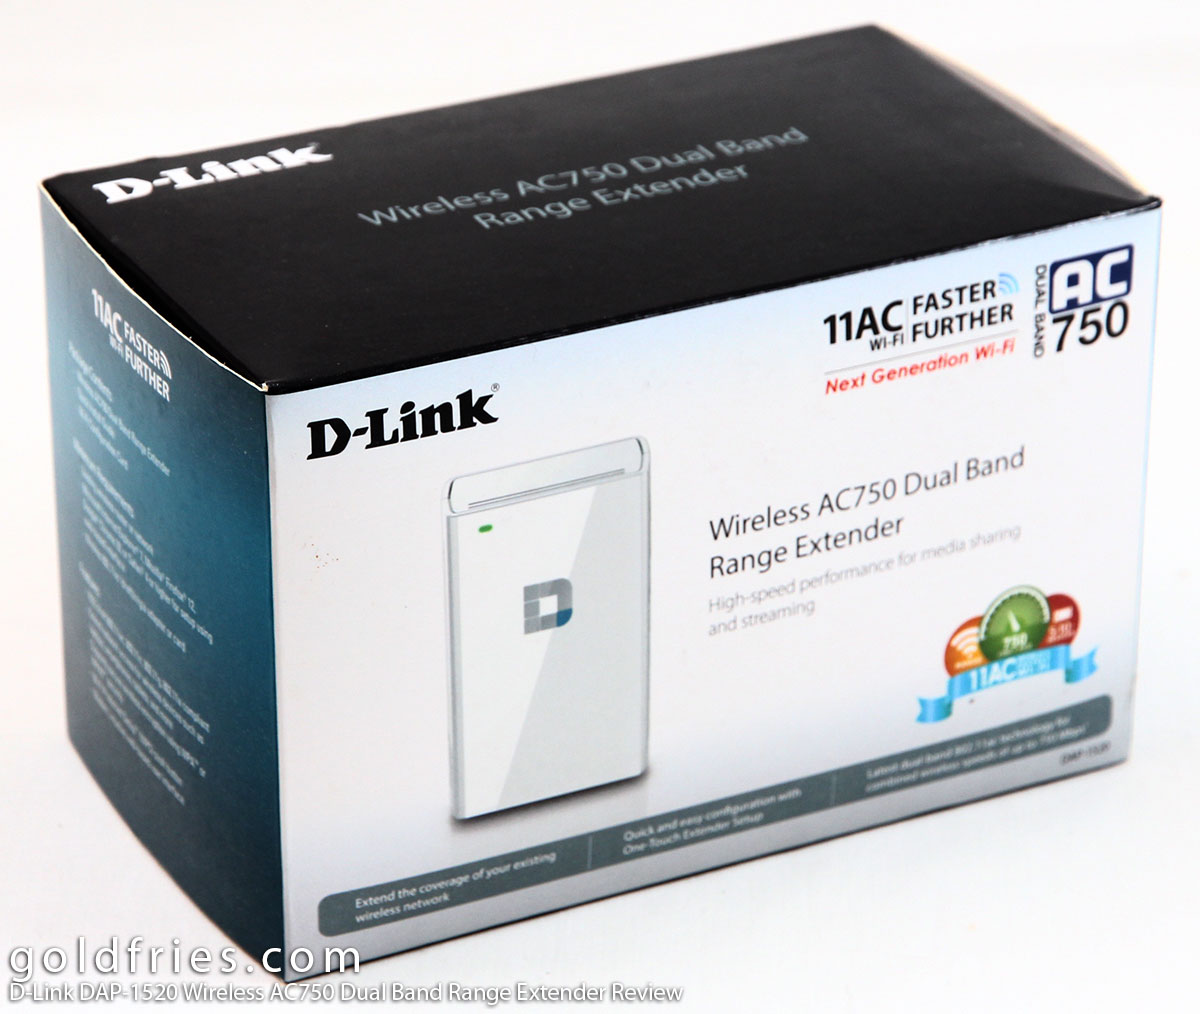 D-Link DAP-1520 Wireless AC750 Dual Band Range Extender Review